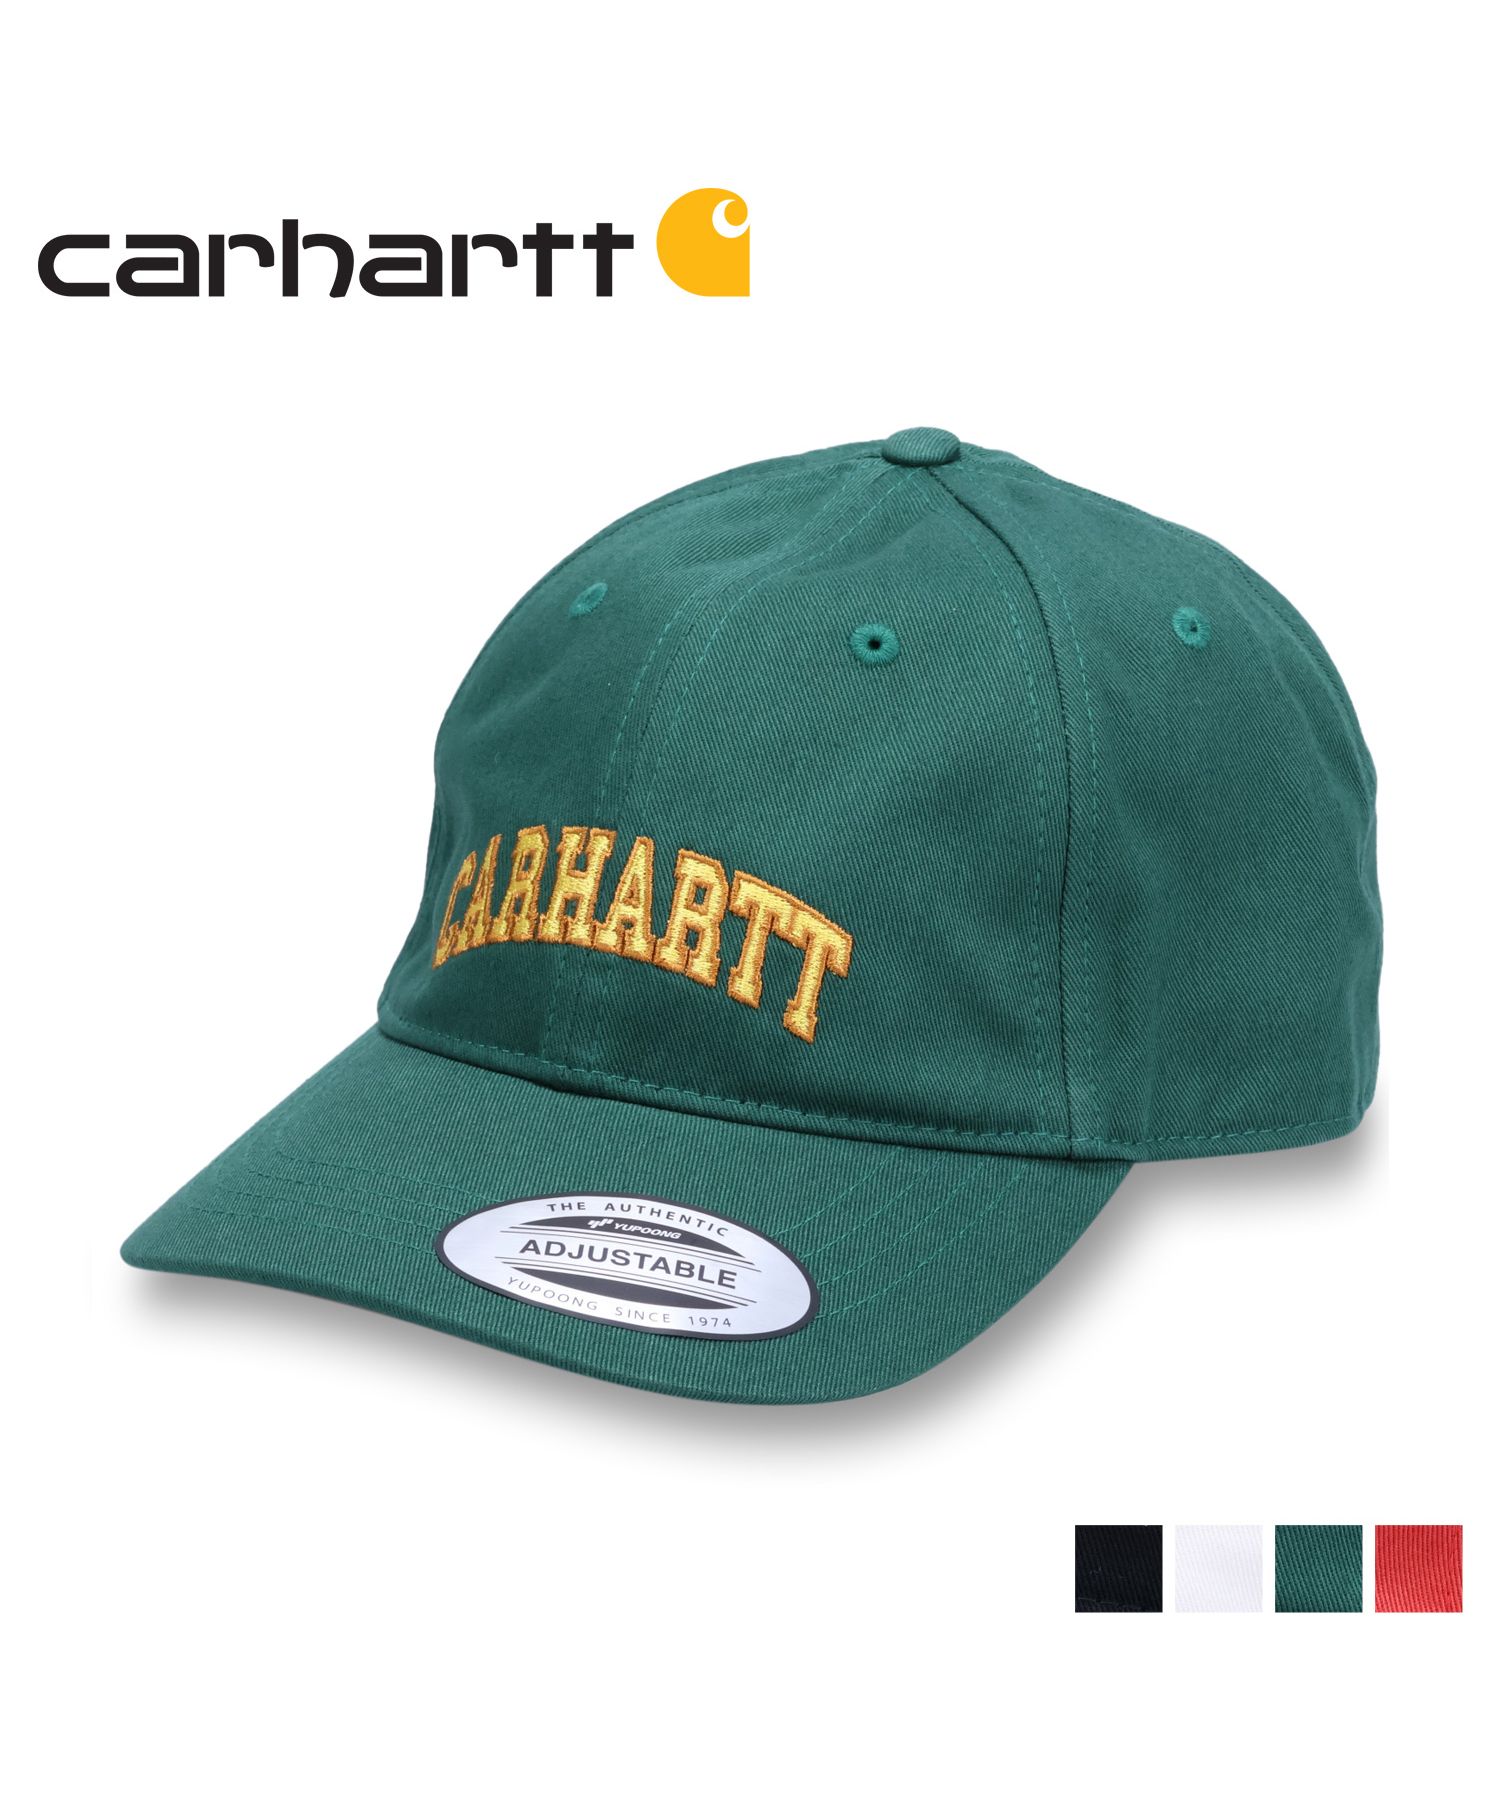 セール】カーハート W.I.P. carhartt W.I.P. キャップ 帽子 ロッカー ...